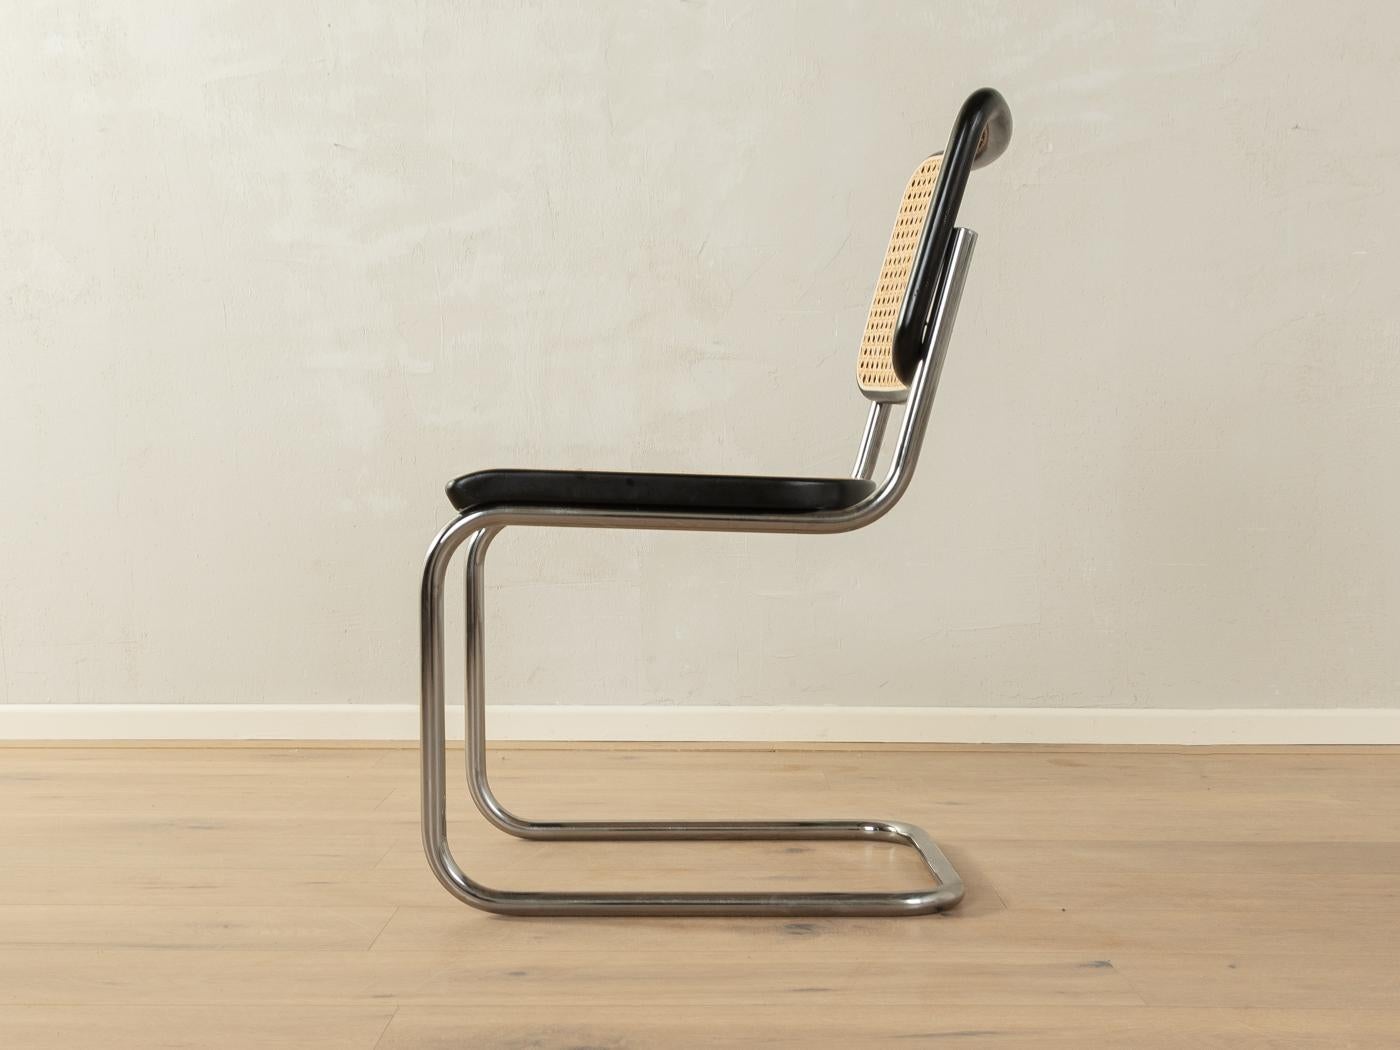 Bauhaus Legendary tubular steel chairs S 32 & S 64, Marcel Breuer for Thonet